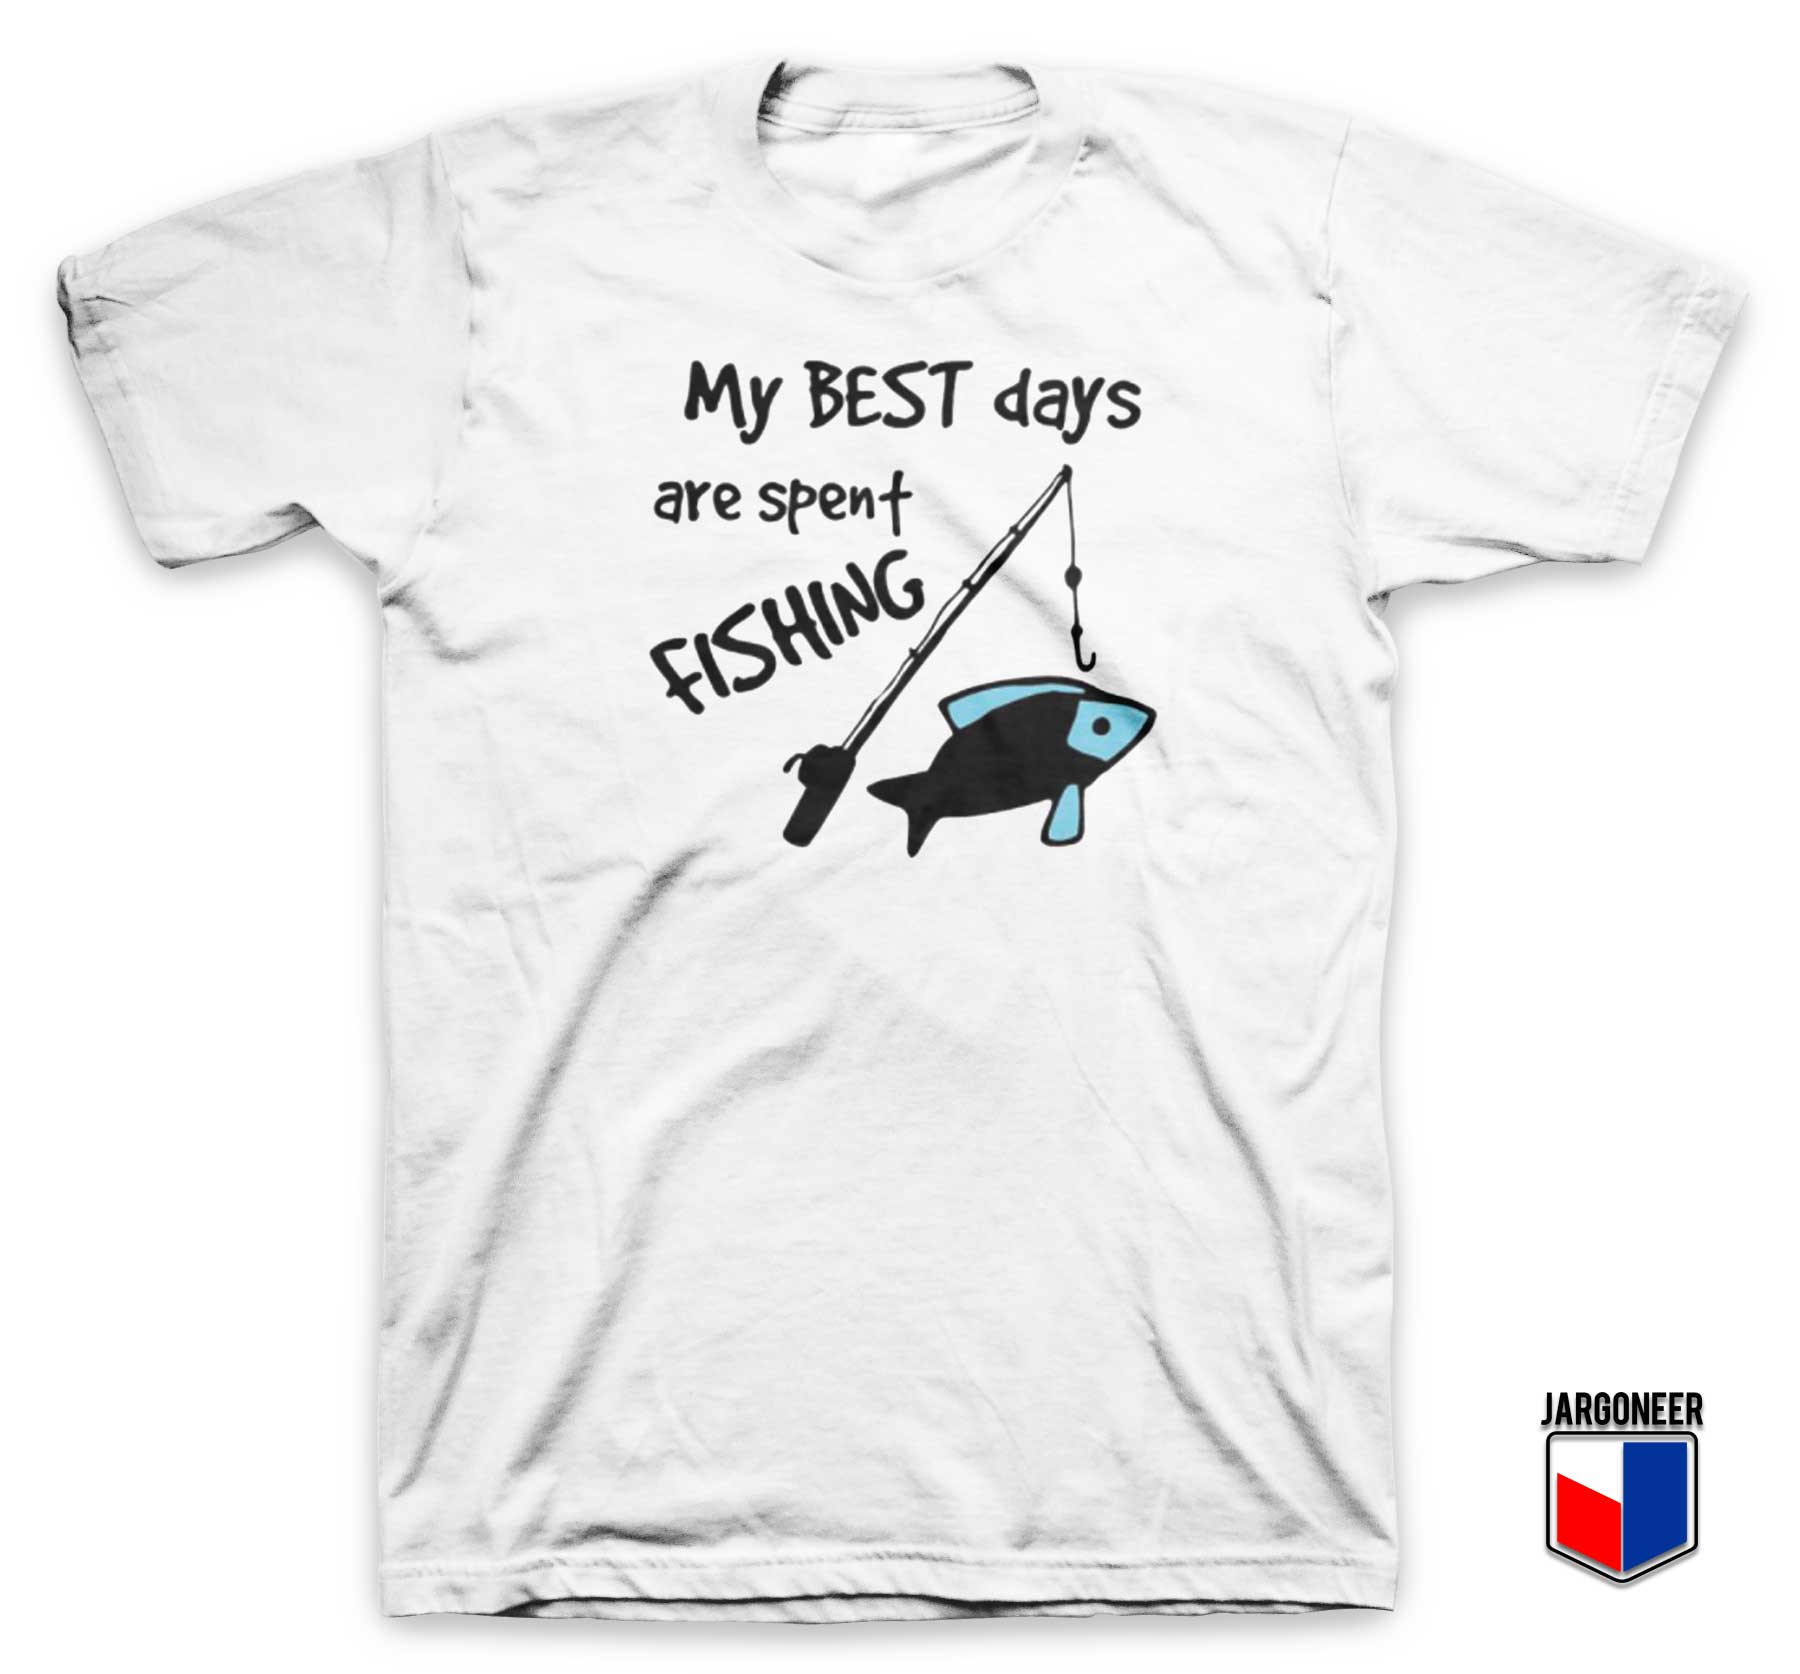 Best Days Spent Fishing T Shirt - Shop Unique Graphic Cool Shirt Designs